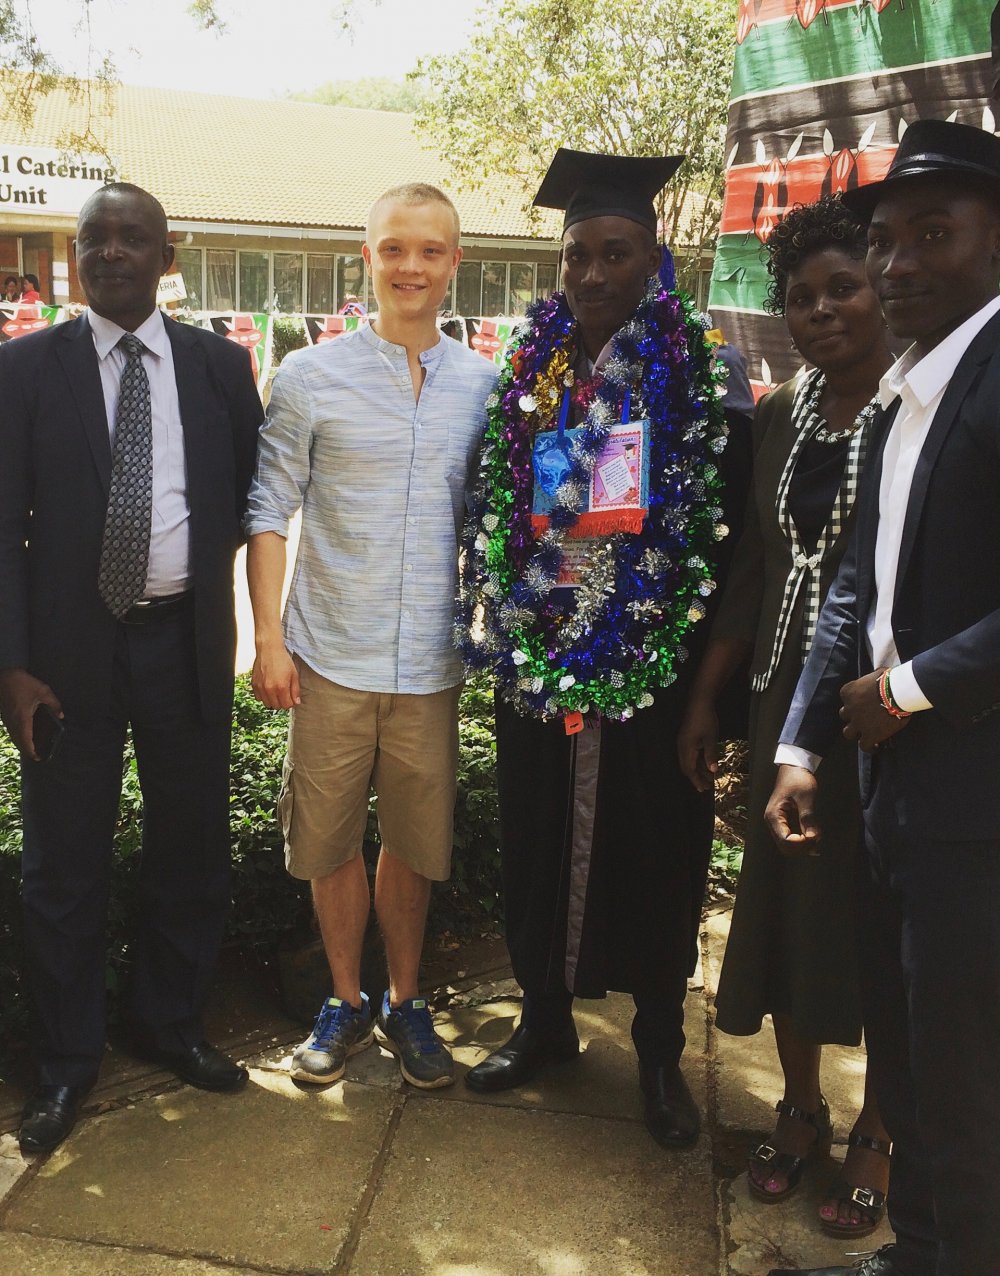 Abschlussfeier mit Freunden: Philipp Stümer hat während seiner Zeit in Afrika viele Freundschaften geschlossen.